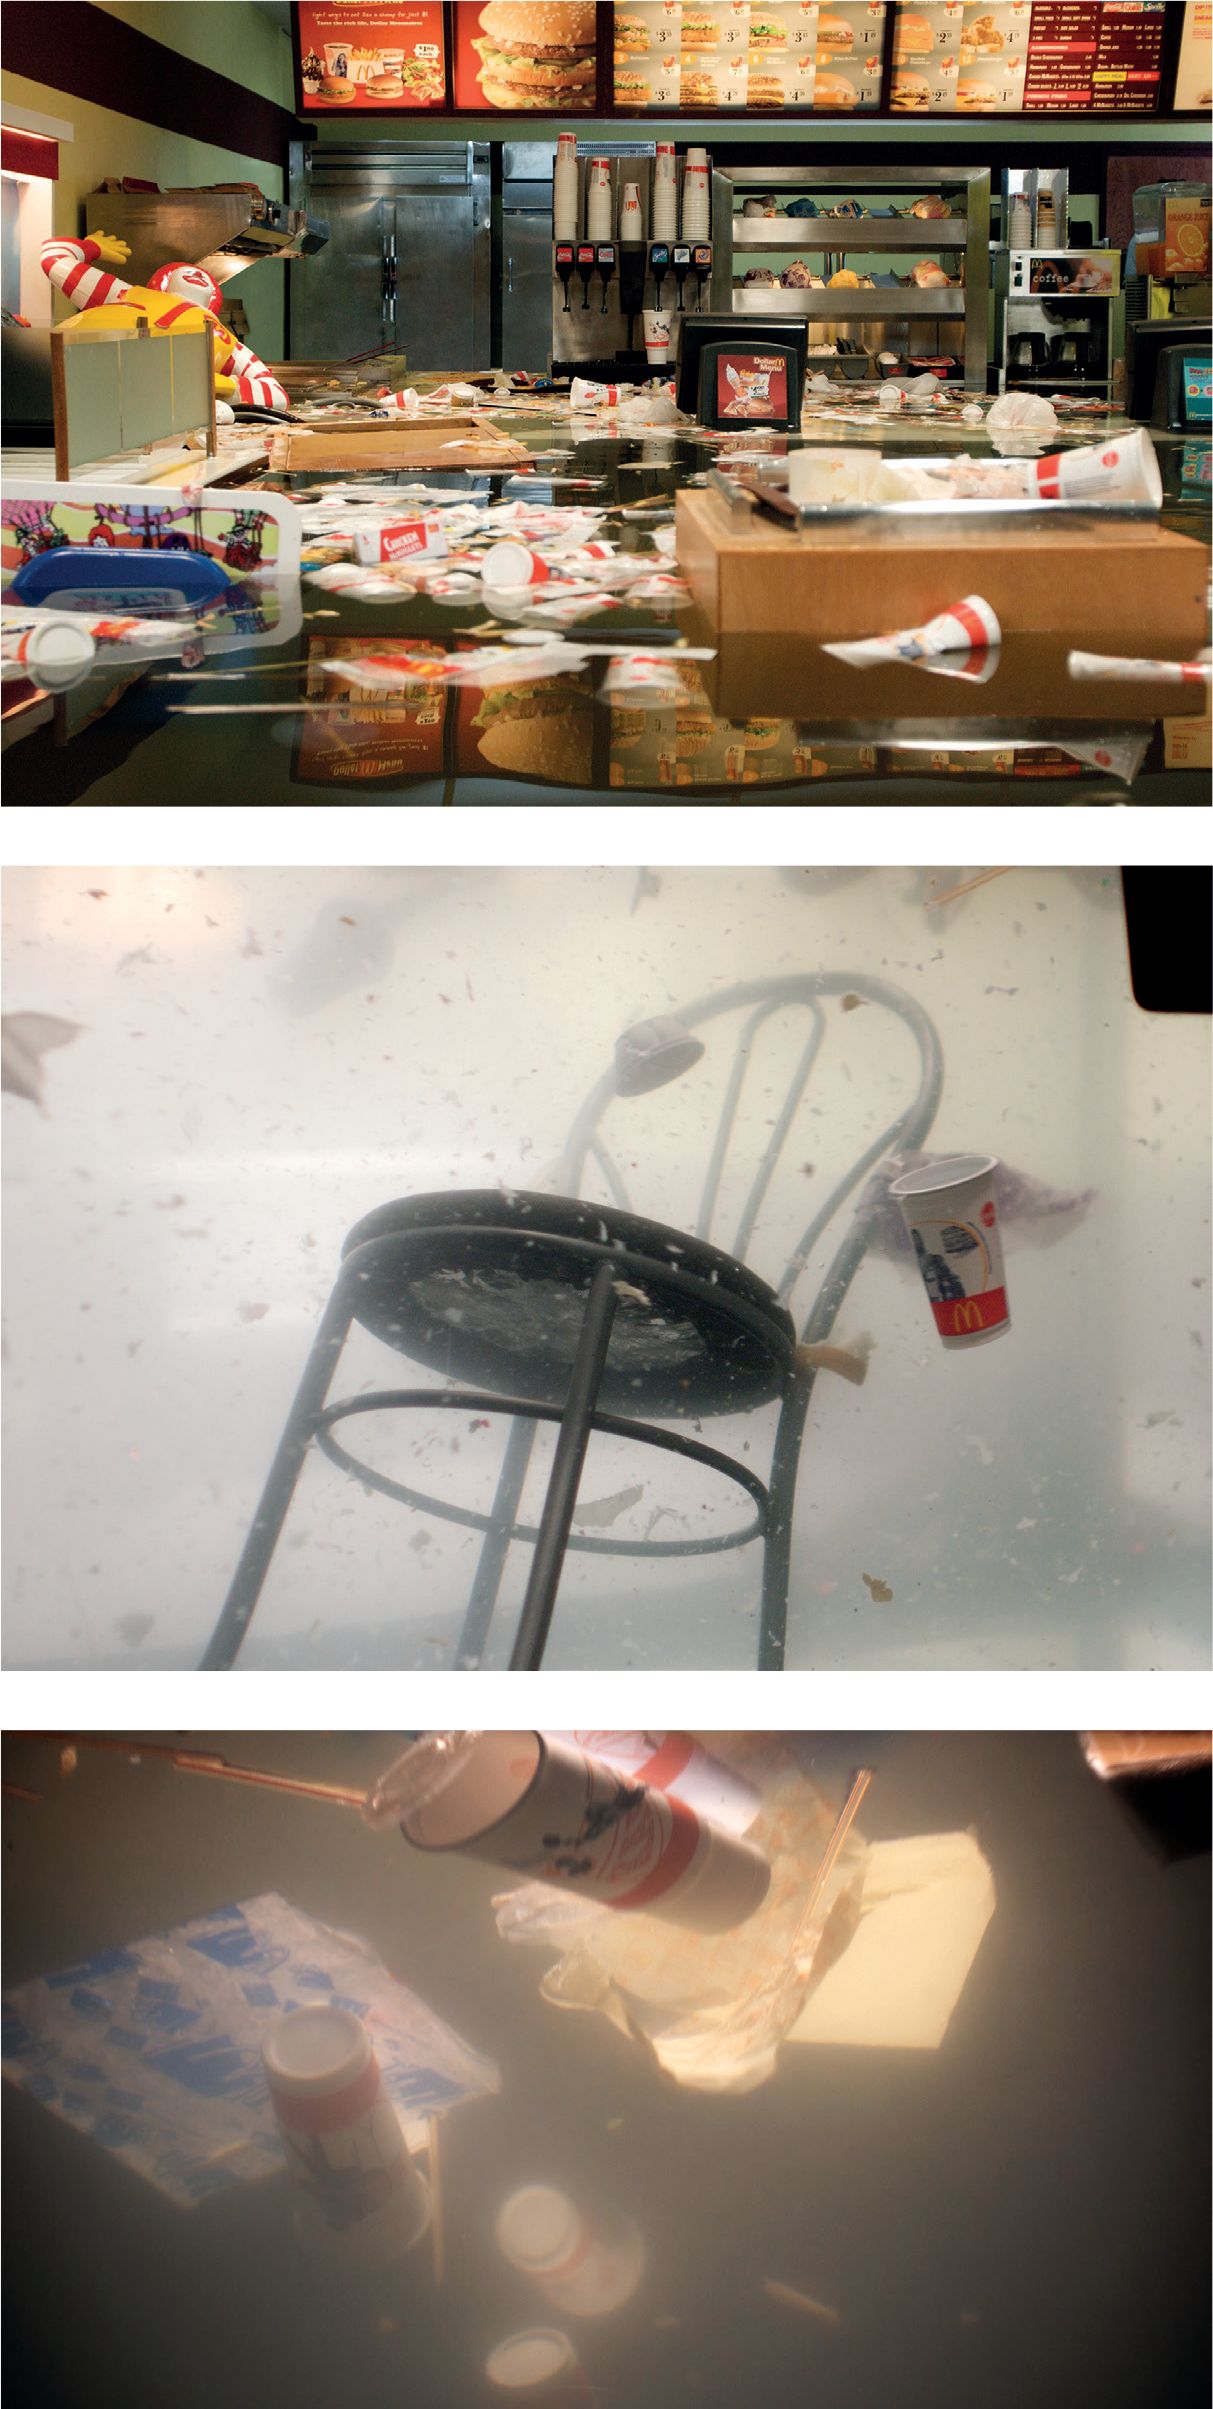 Fotogramas de *McDonald’s* inundado, 2009. Fotografía de SUPERFLEX